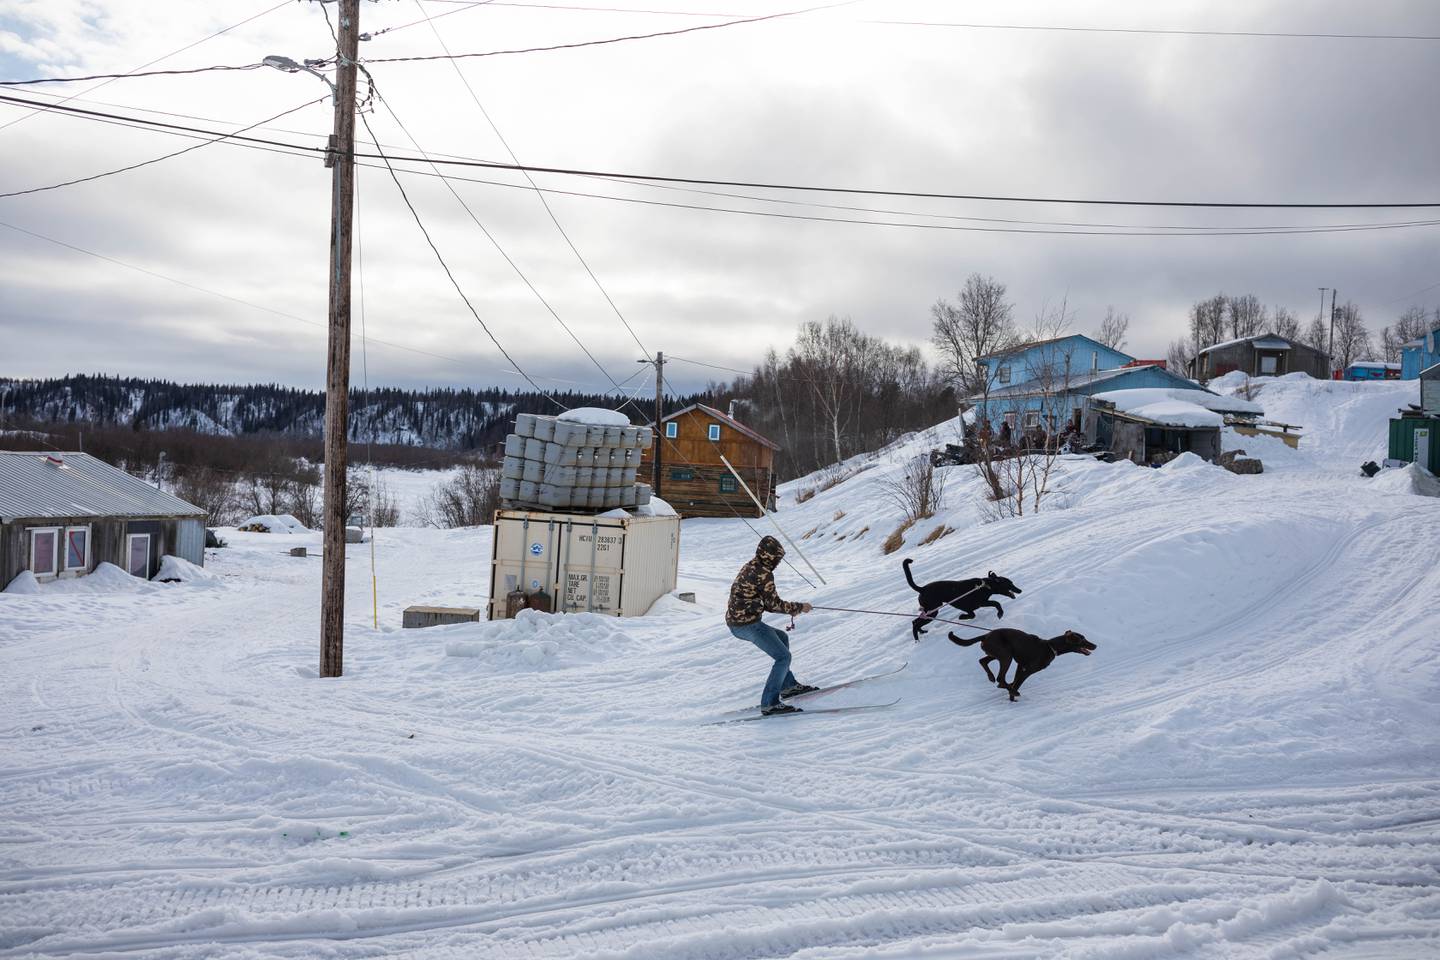 ADN360, Keith Pitka, Russian Mission, rural Alaska, skijor, skijoring, winter